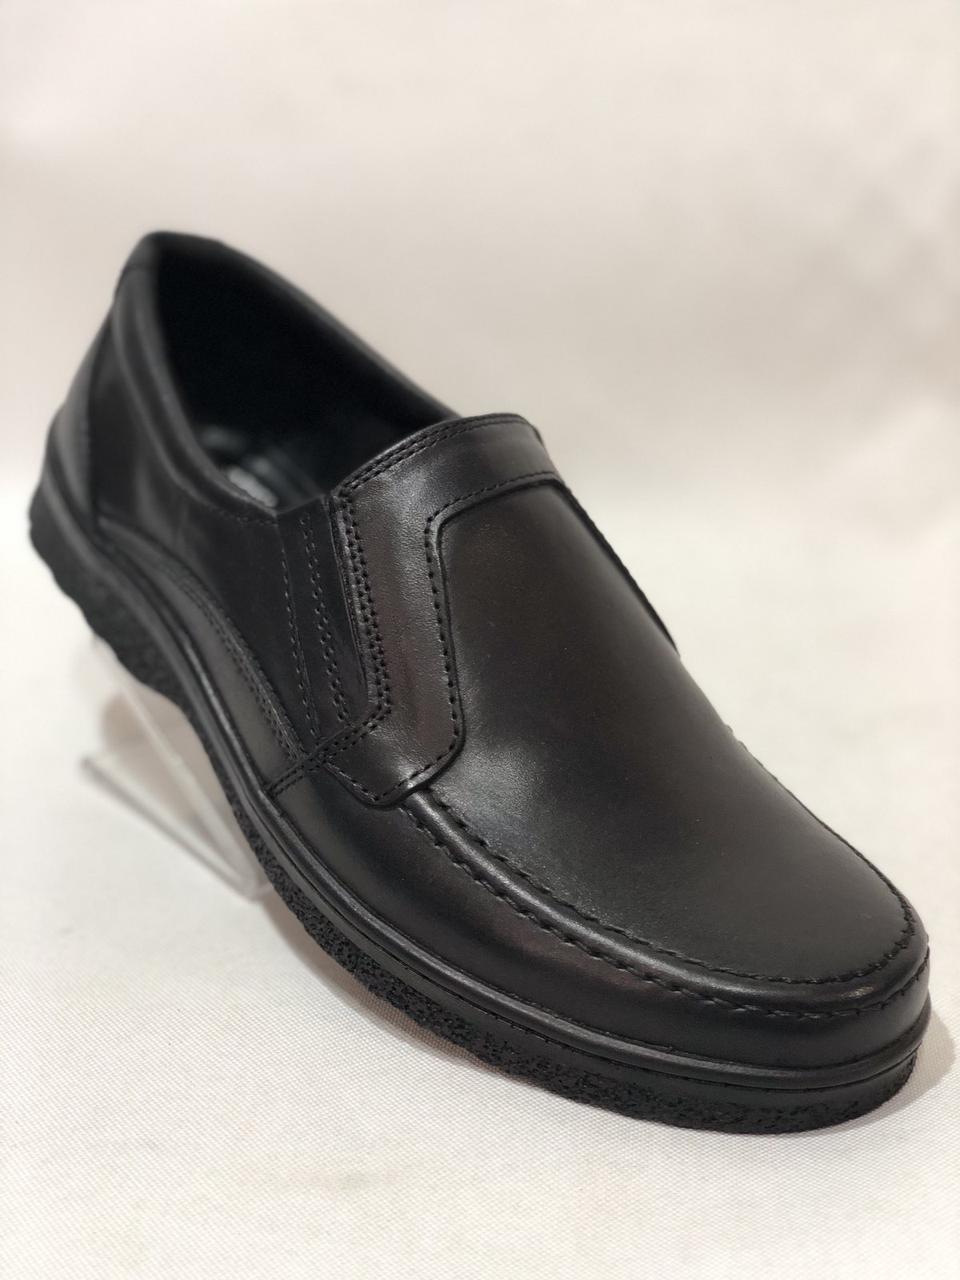 40,41,42,43,44,45 Мужские кожаные туфли TRAFFIC (Траффик) Черные